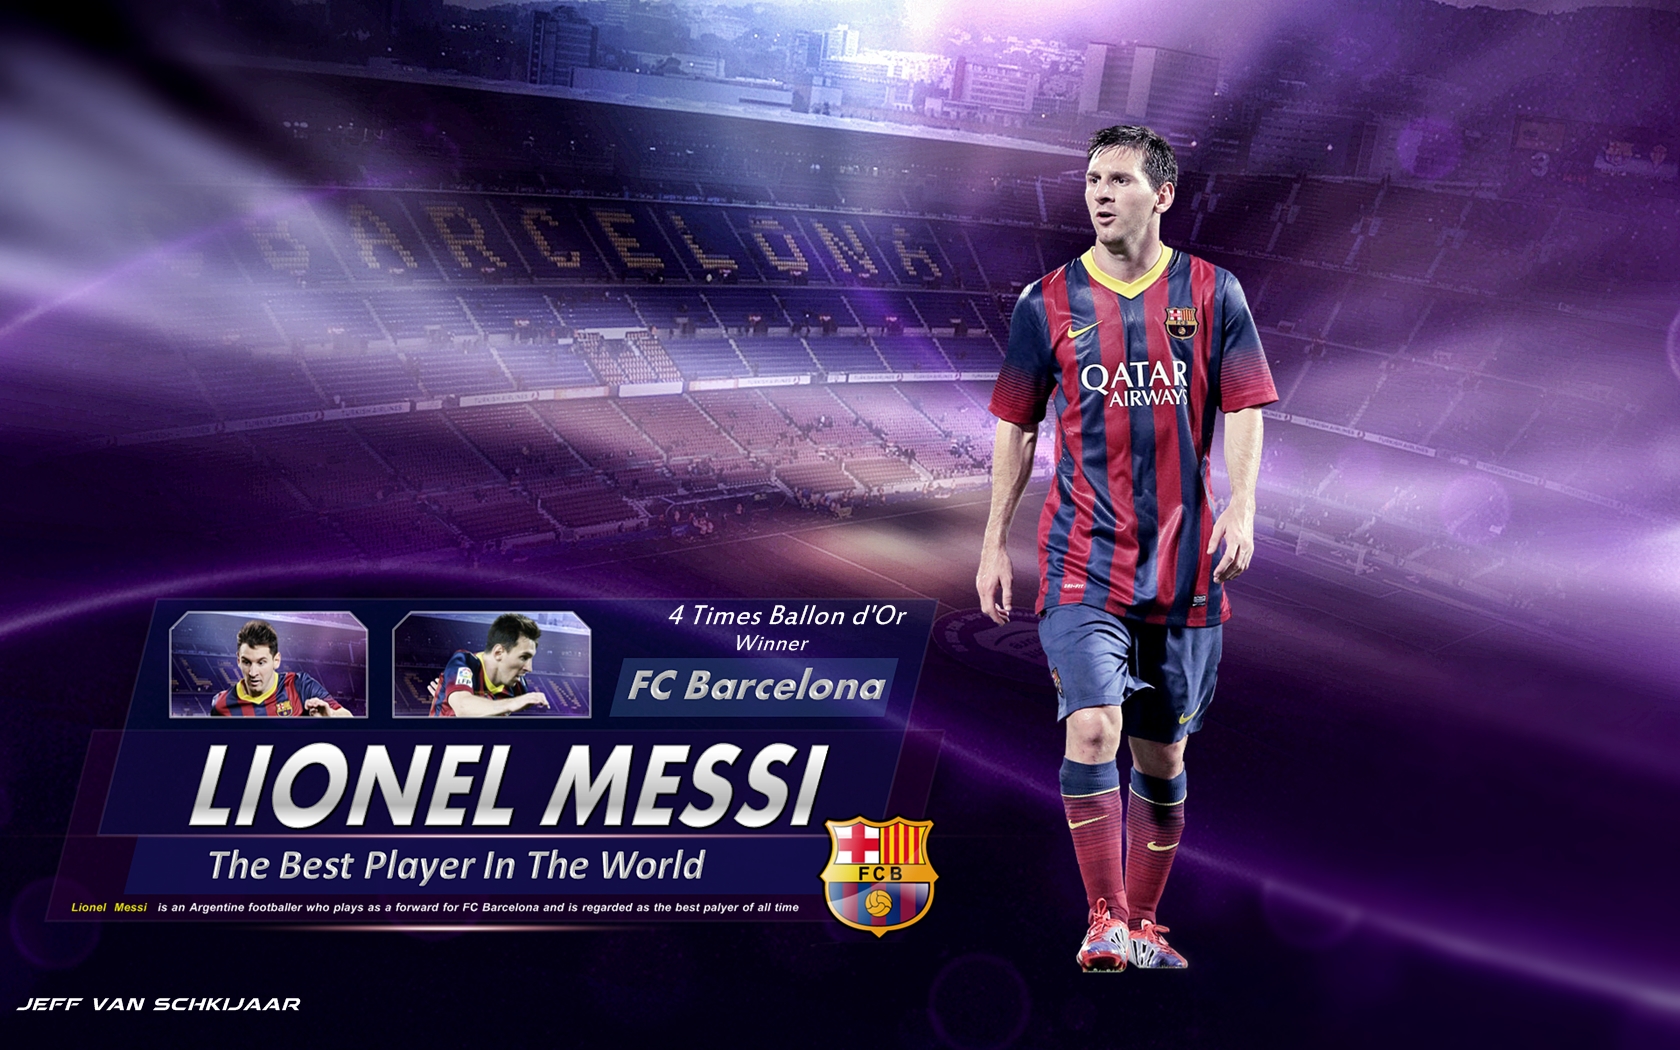 Lionel Messi Barcelona Wallpaper Hd 2014 - Lionel Messi Wallpaper Hd 2014 -  1680x1050 Wallpaper 